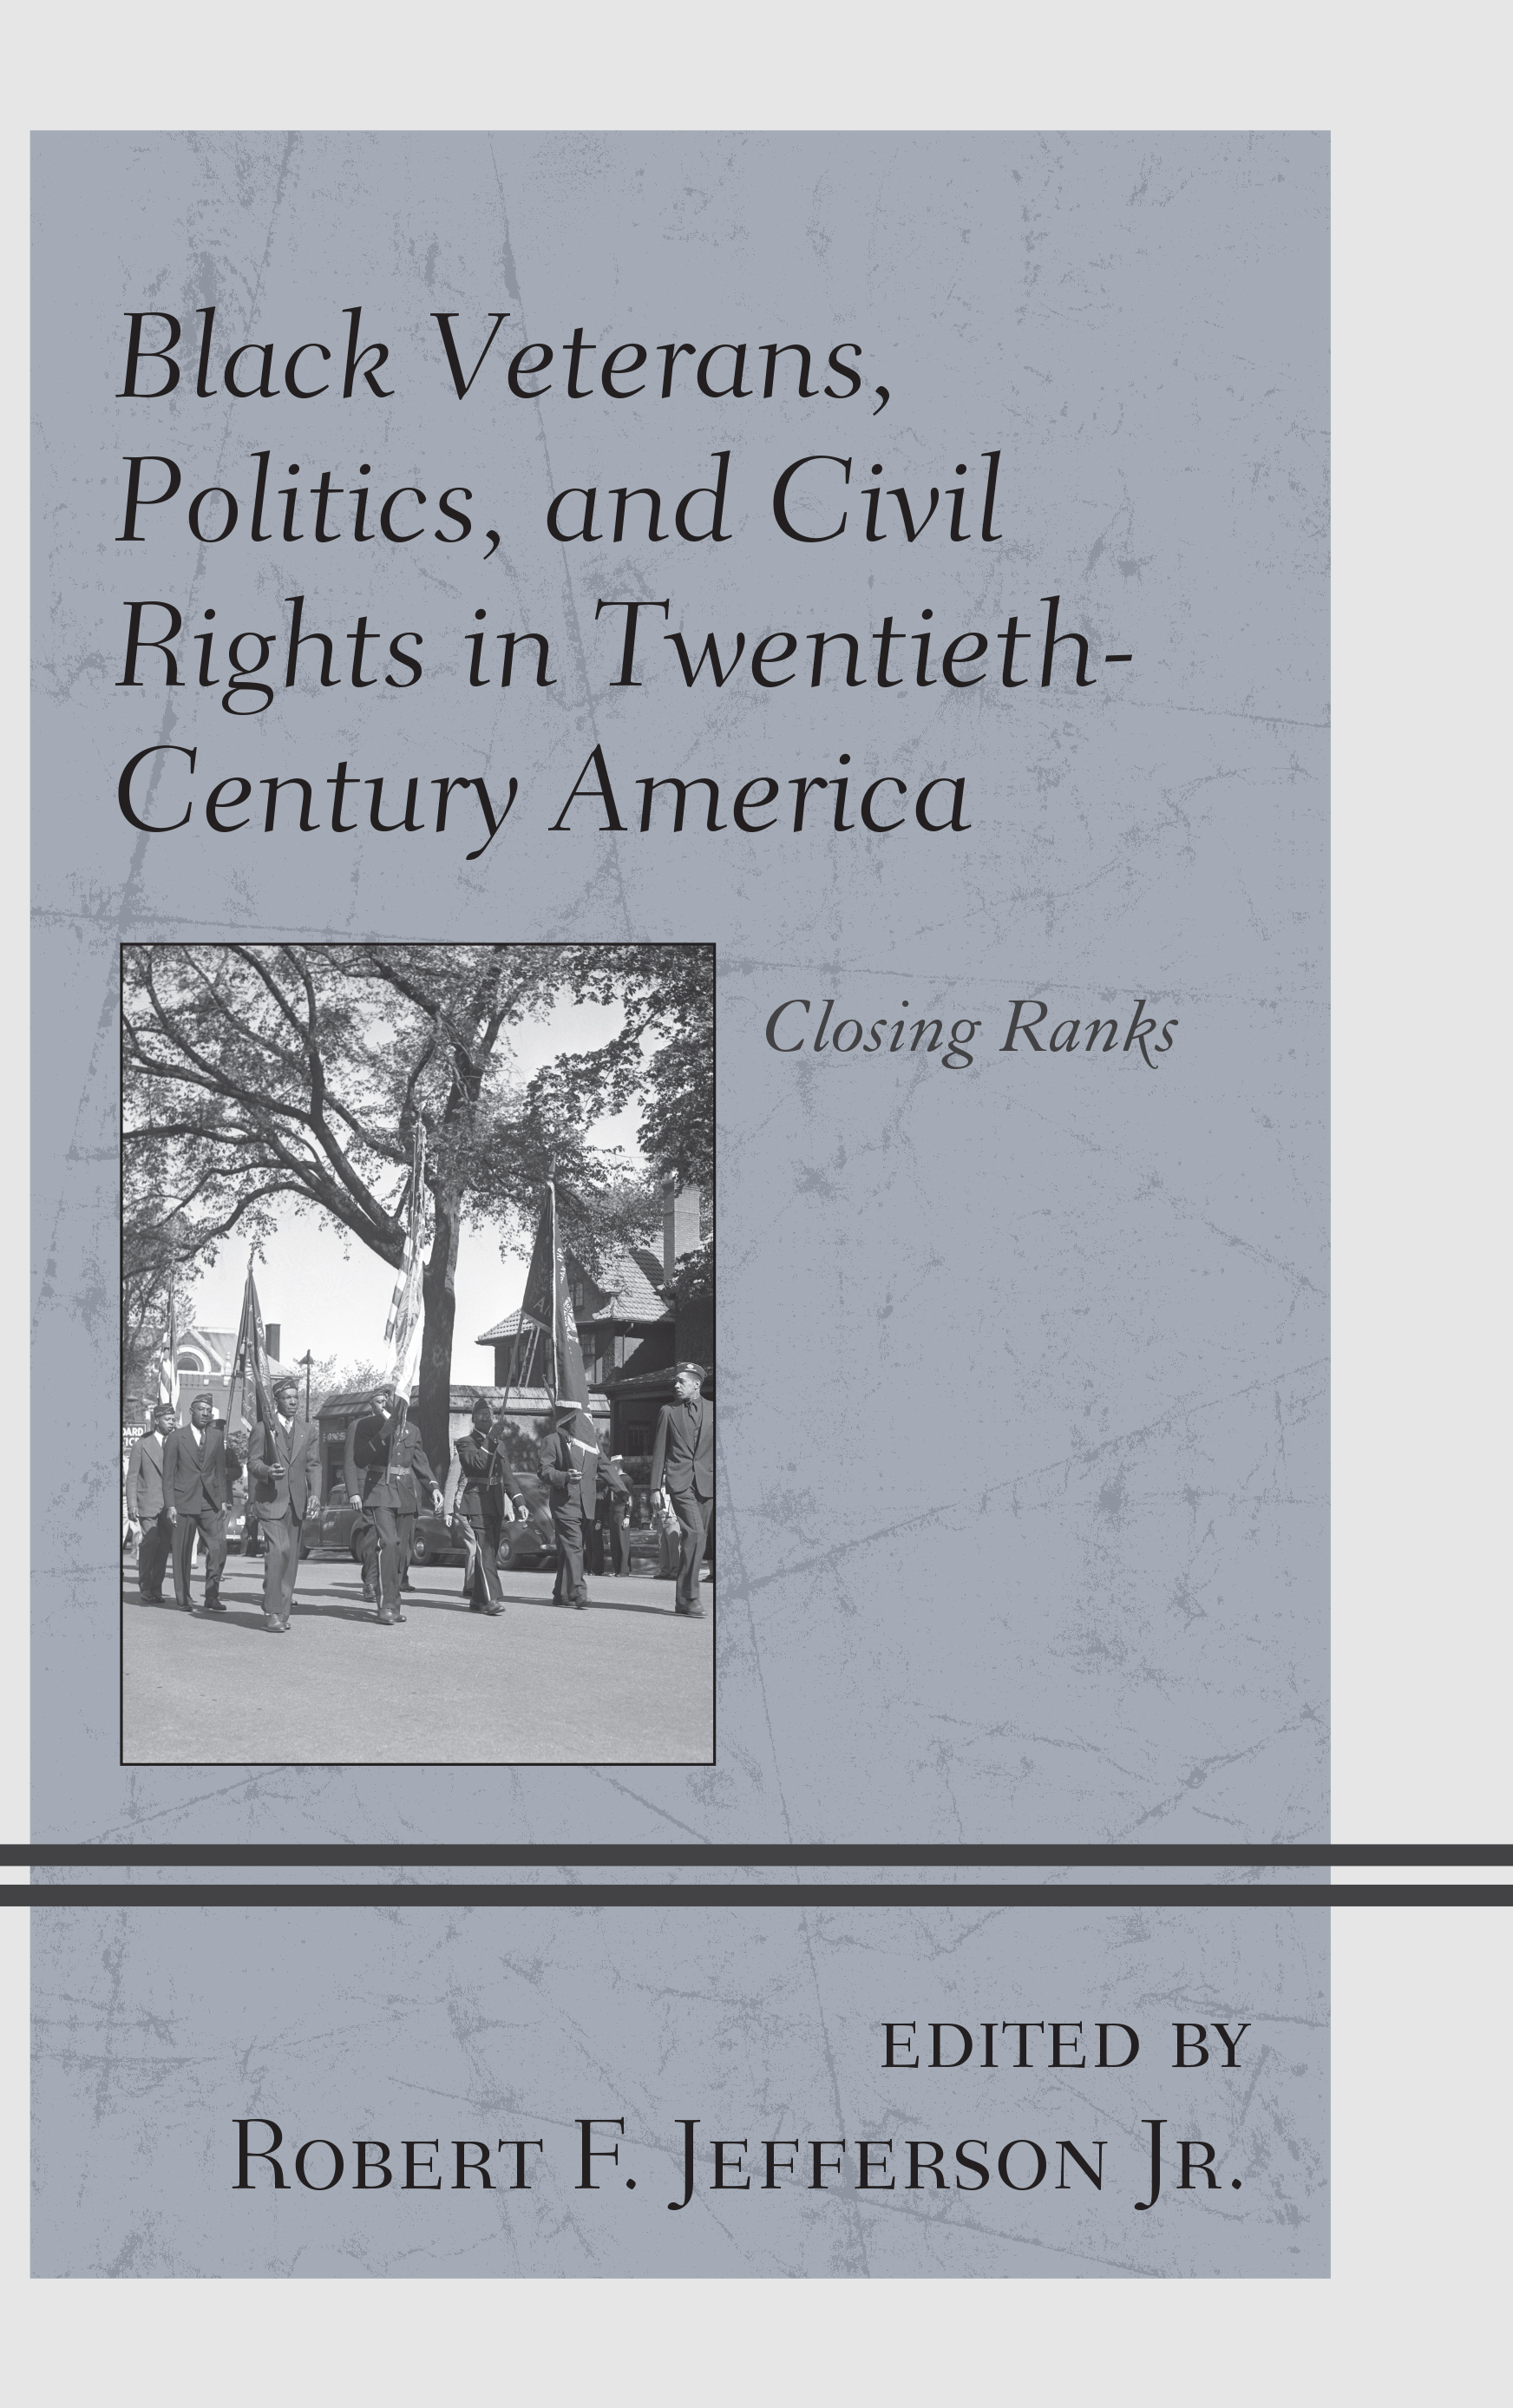 Black Veterans, Politics, and Civil Rights in Twentieth-Century America: Closing Ranks